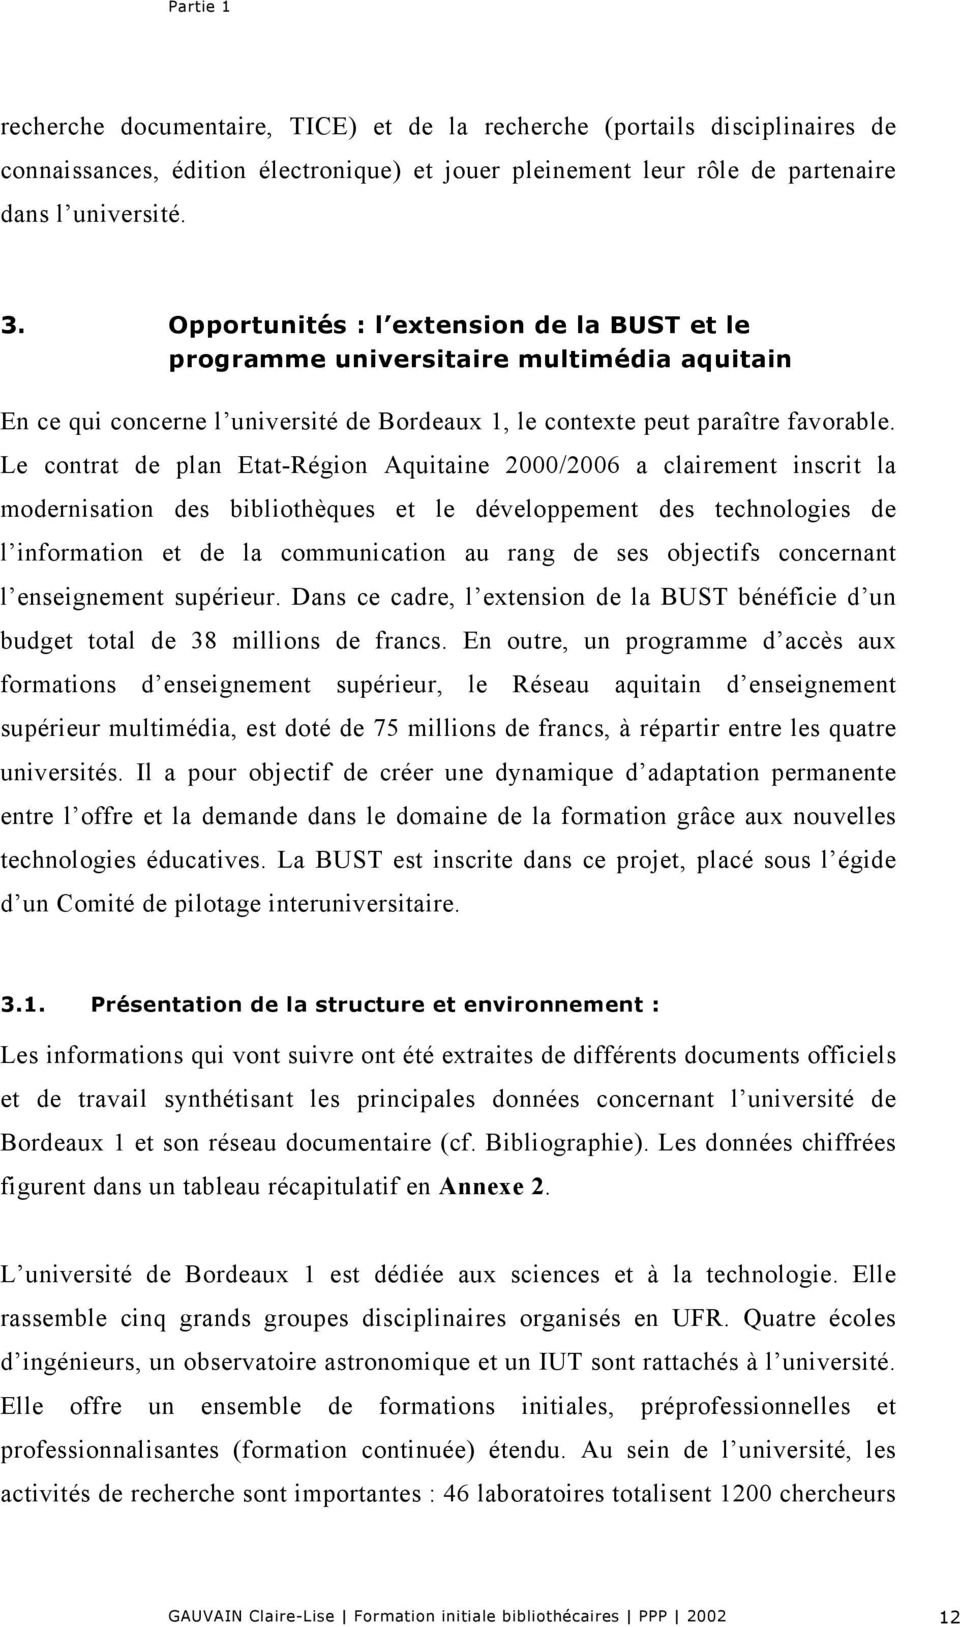 Le contrat de plan Etat-Région Aquitaine 2000/2006 a clairement inscrit la modernisation des bibliothèques et le développement des technologies de l information et de la communication au rang de ses